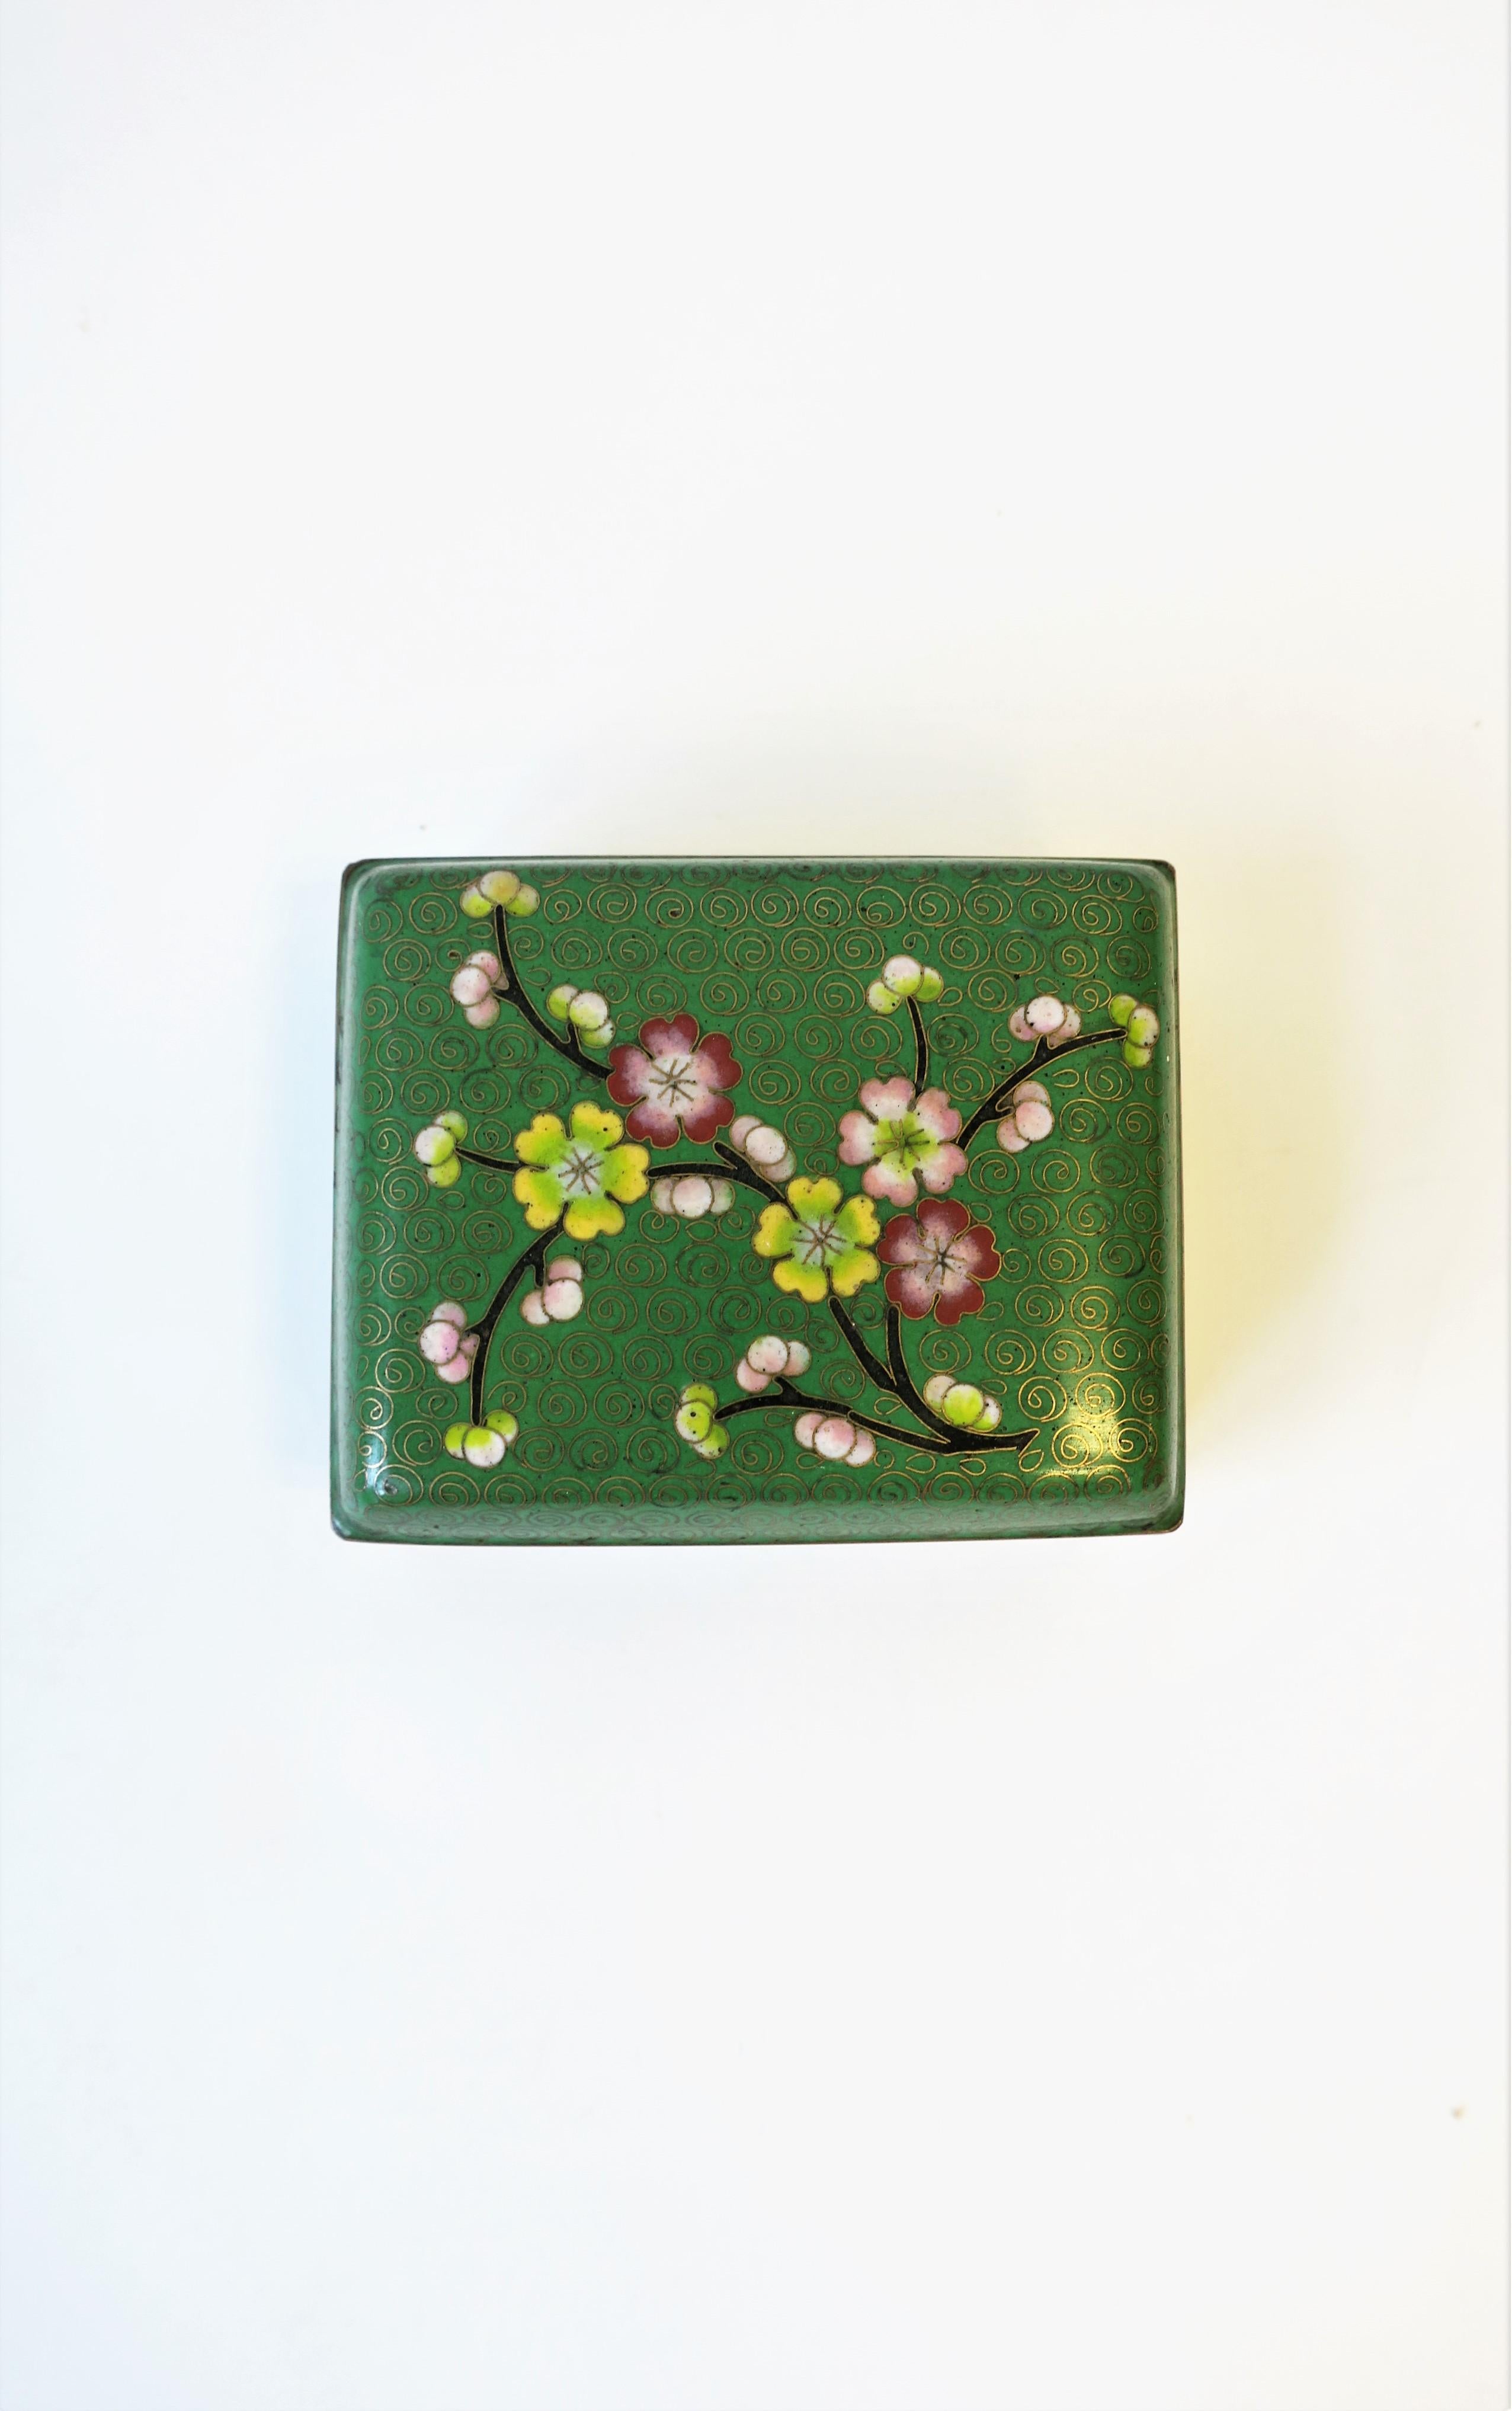 Schmuckkästchen aus Cloisonné-Email und Messing mit Kirschblütenmotiv, ca. Ende des 20. Jahrhunderts. Die Box eignet sich hervorragend für Schmuck oder kleine Gegenstände auf dem Waschtisch, Schreibtisch, Nachttisch etc. Zu den Farben gehören Grün,